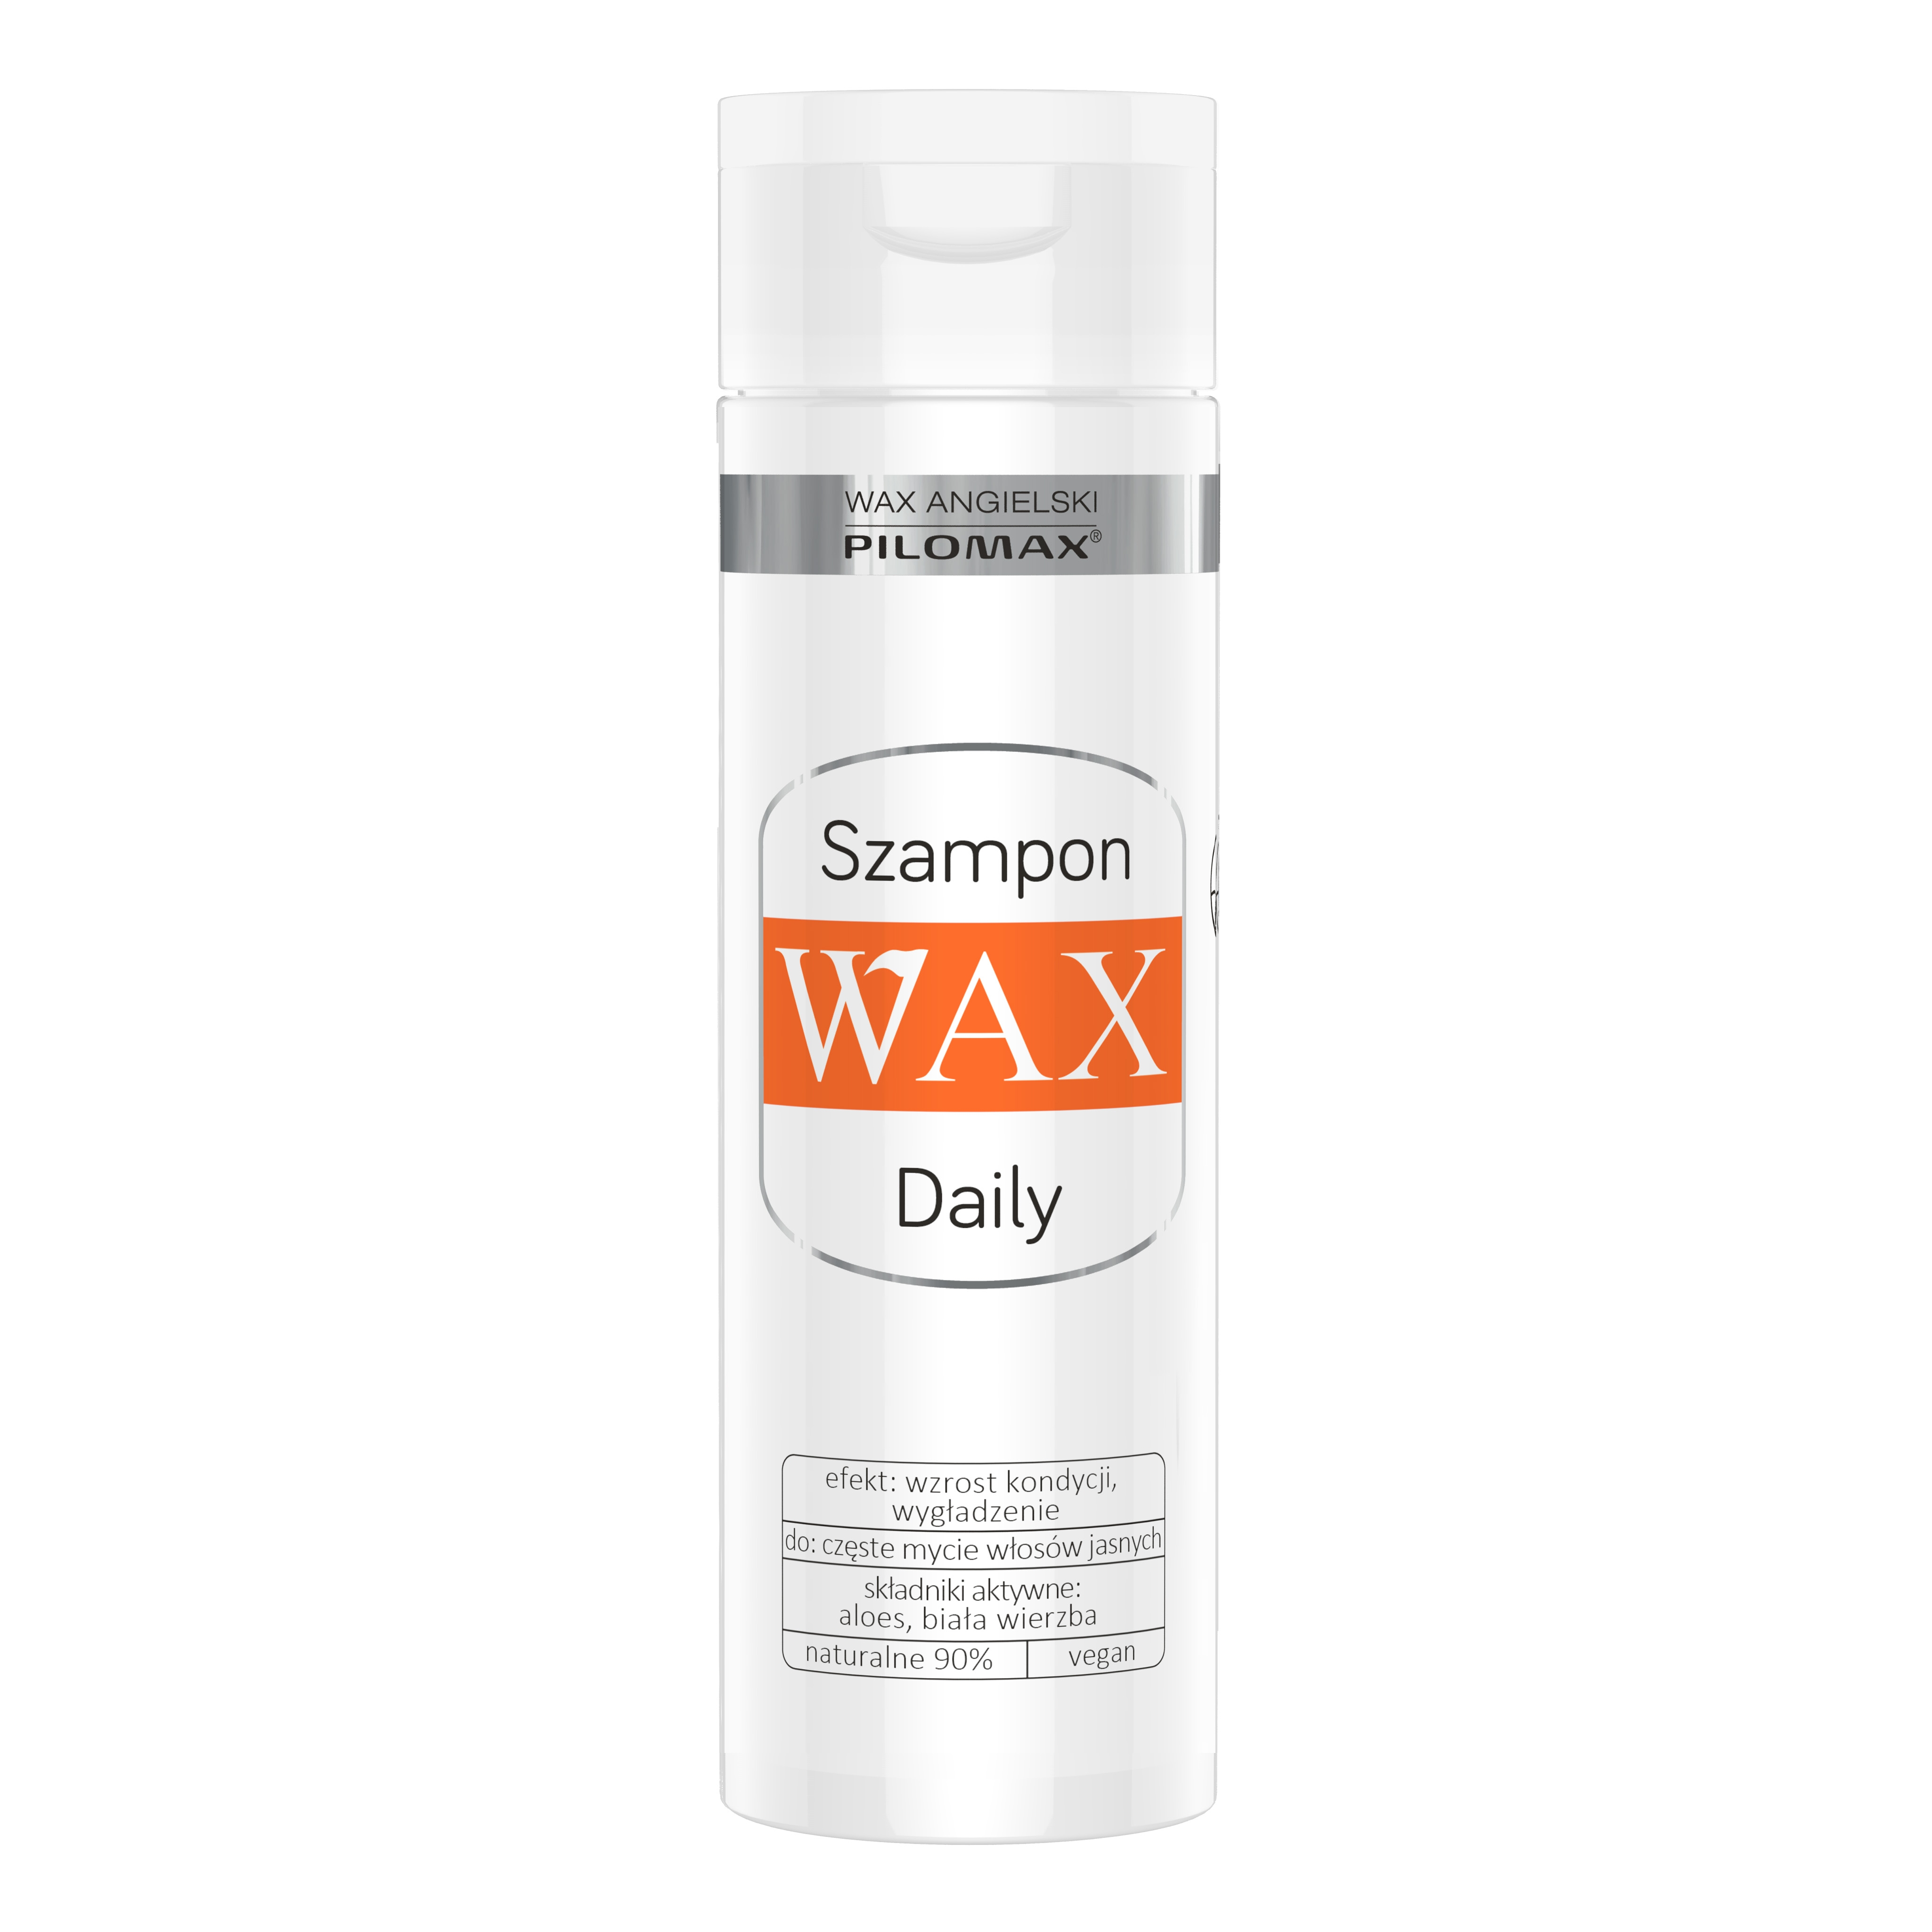 wax szampon wizaz